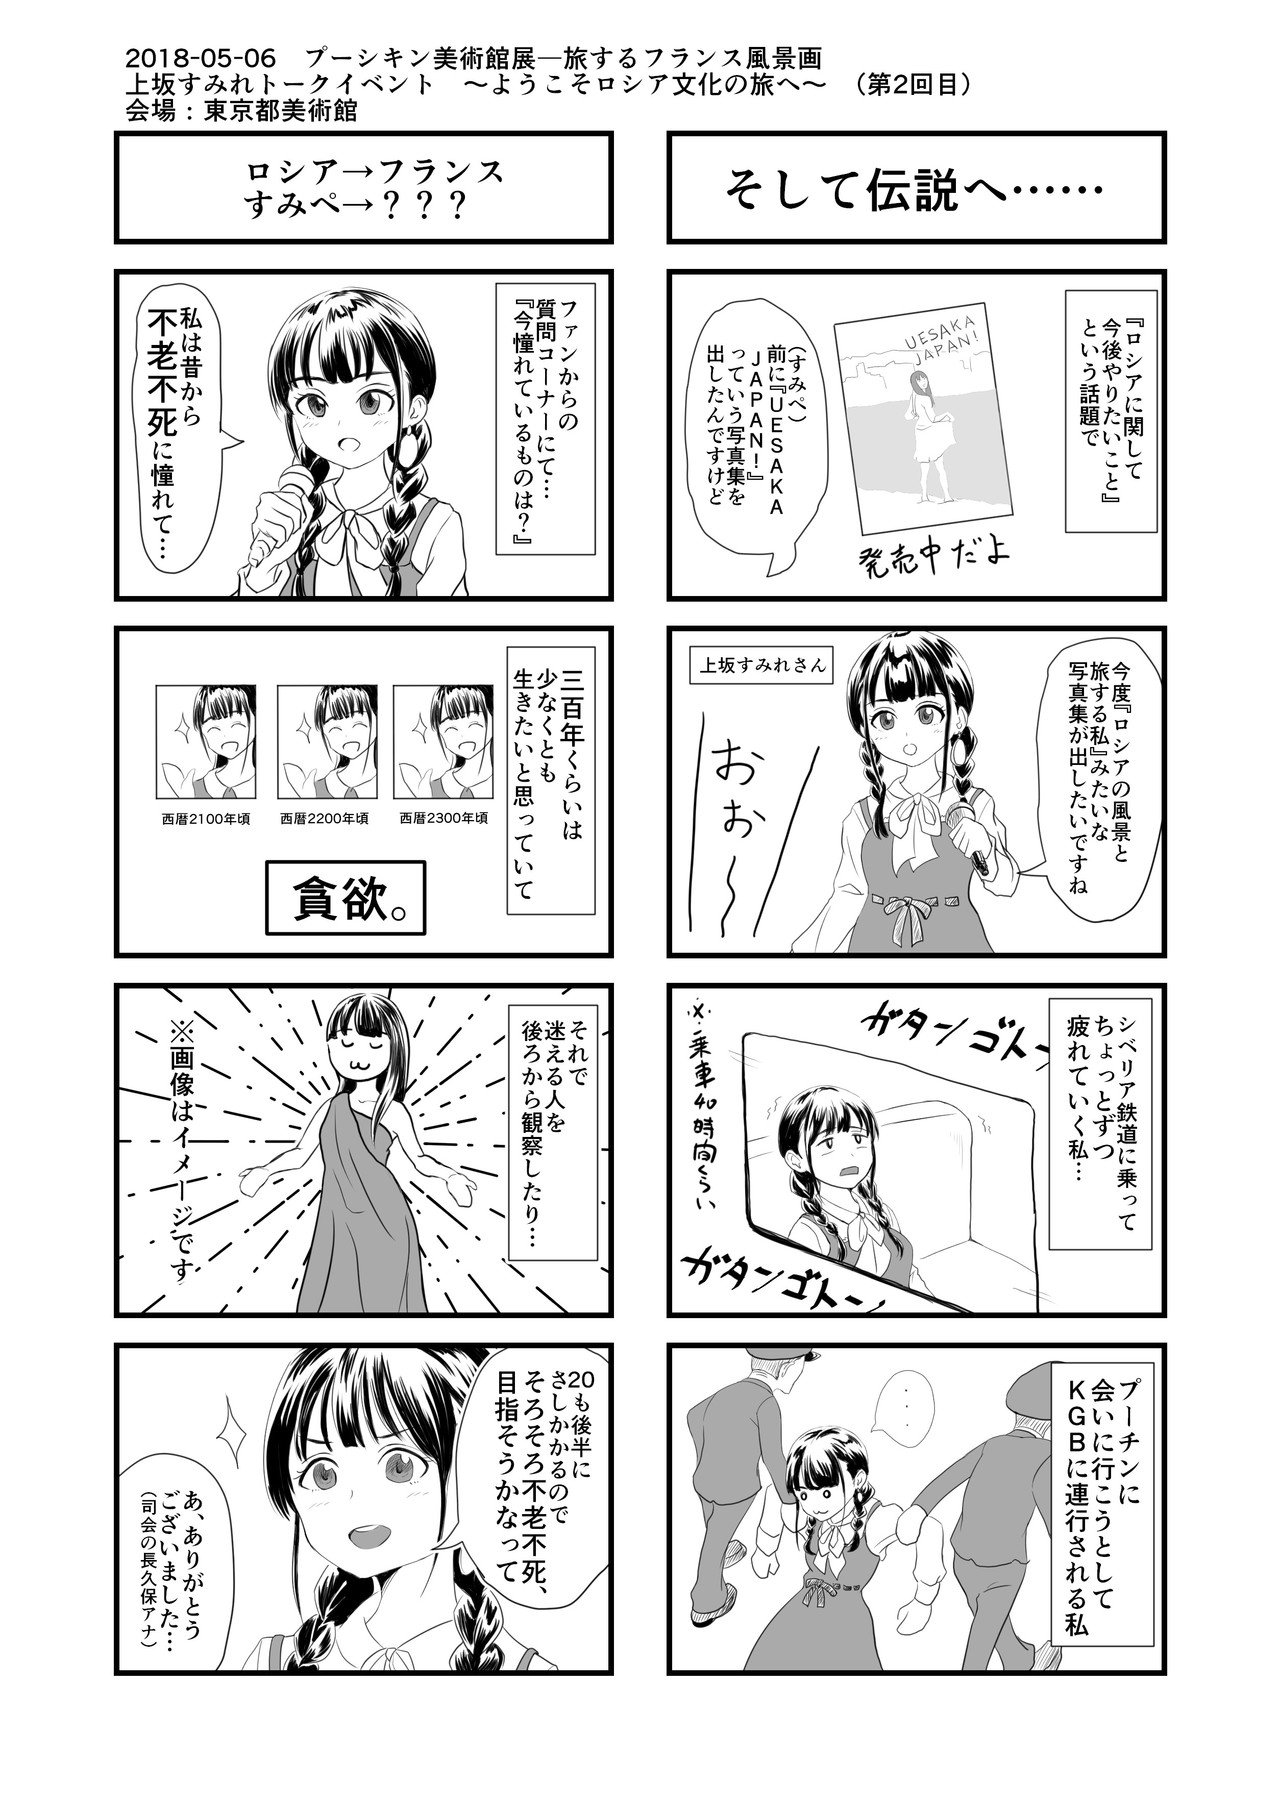 上坂すみれさんイベントレポート４コマ漫画 ここすき 上坂さん 試し読み版 Shuhei Note